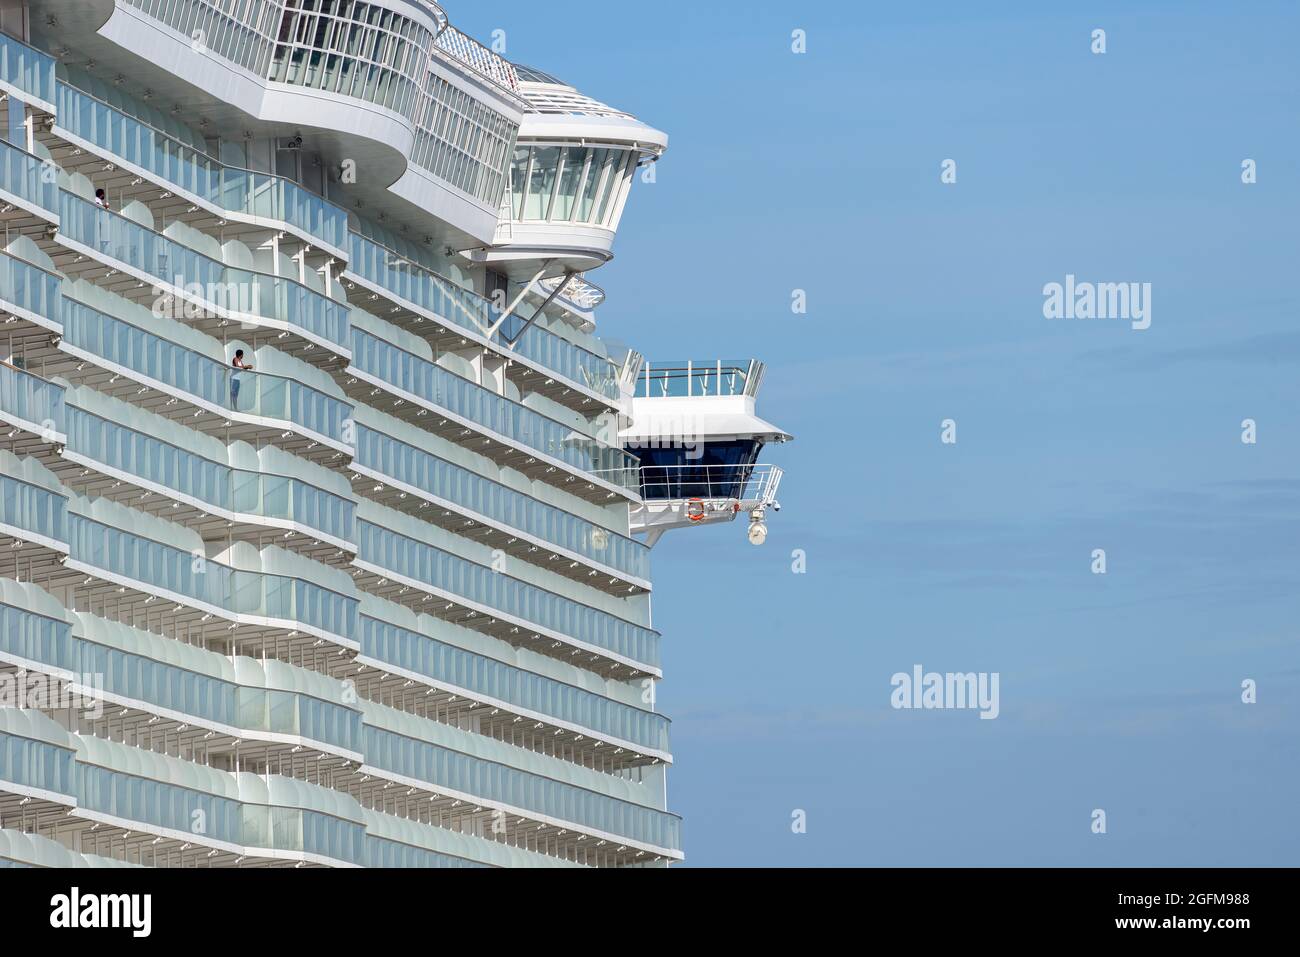 Allure of the Seas, betrieben von Royal Caribbean International, ist eines der größten Kreuzschiffe der Welt - Juli 2020. Stockfoto